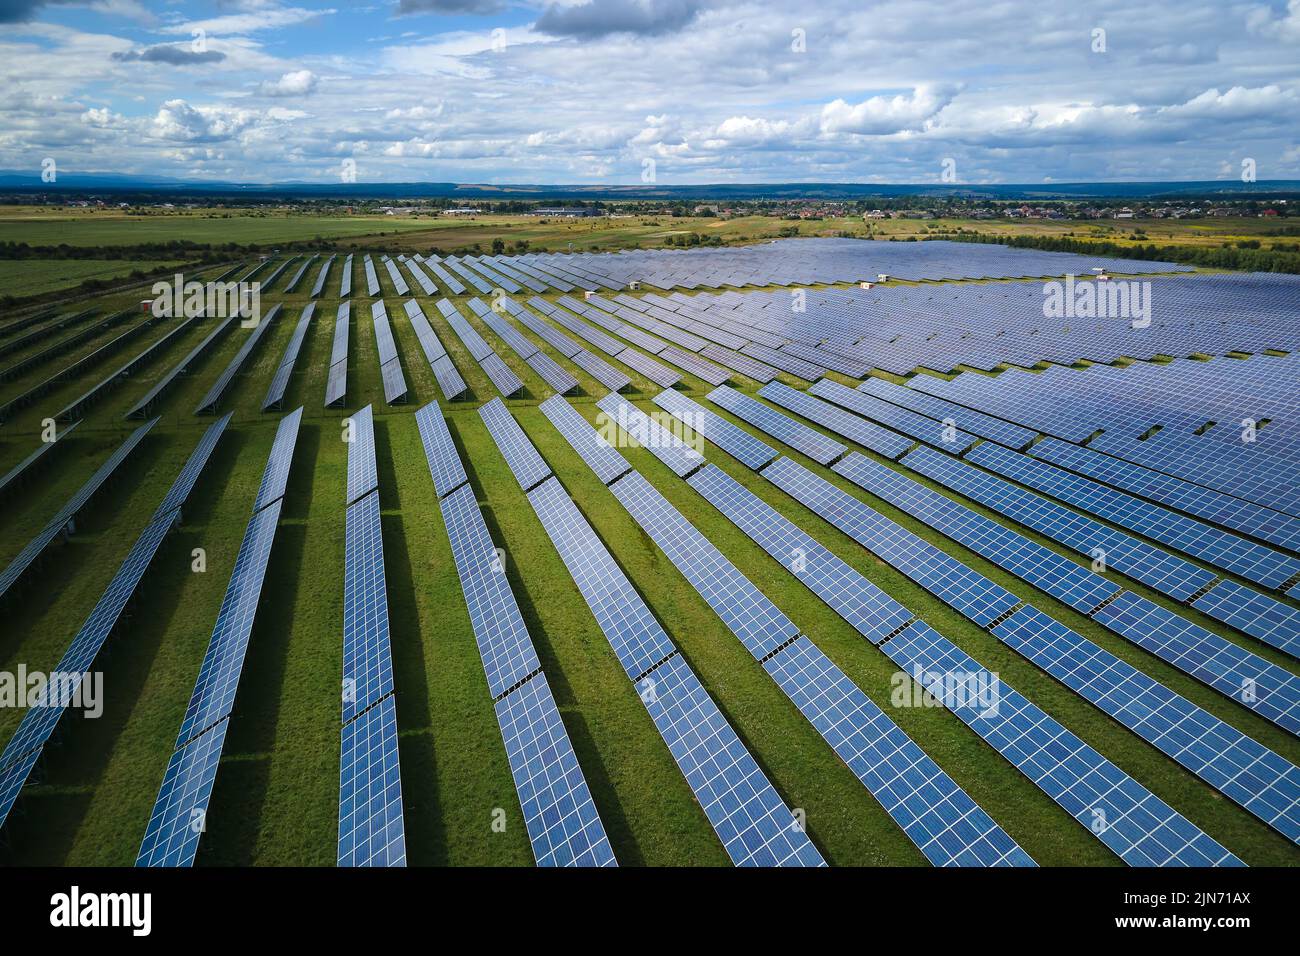 Vue aérienne de la grande centrale électrique durable avec de nombreuses rangées de panneaux photovoltaïques solaires pour produire de l'énergie électrique propre. Renouvelable Banque D'Images